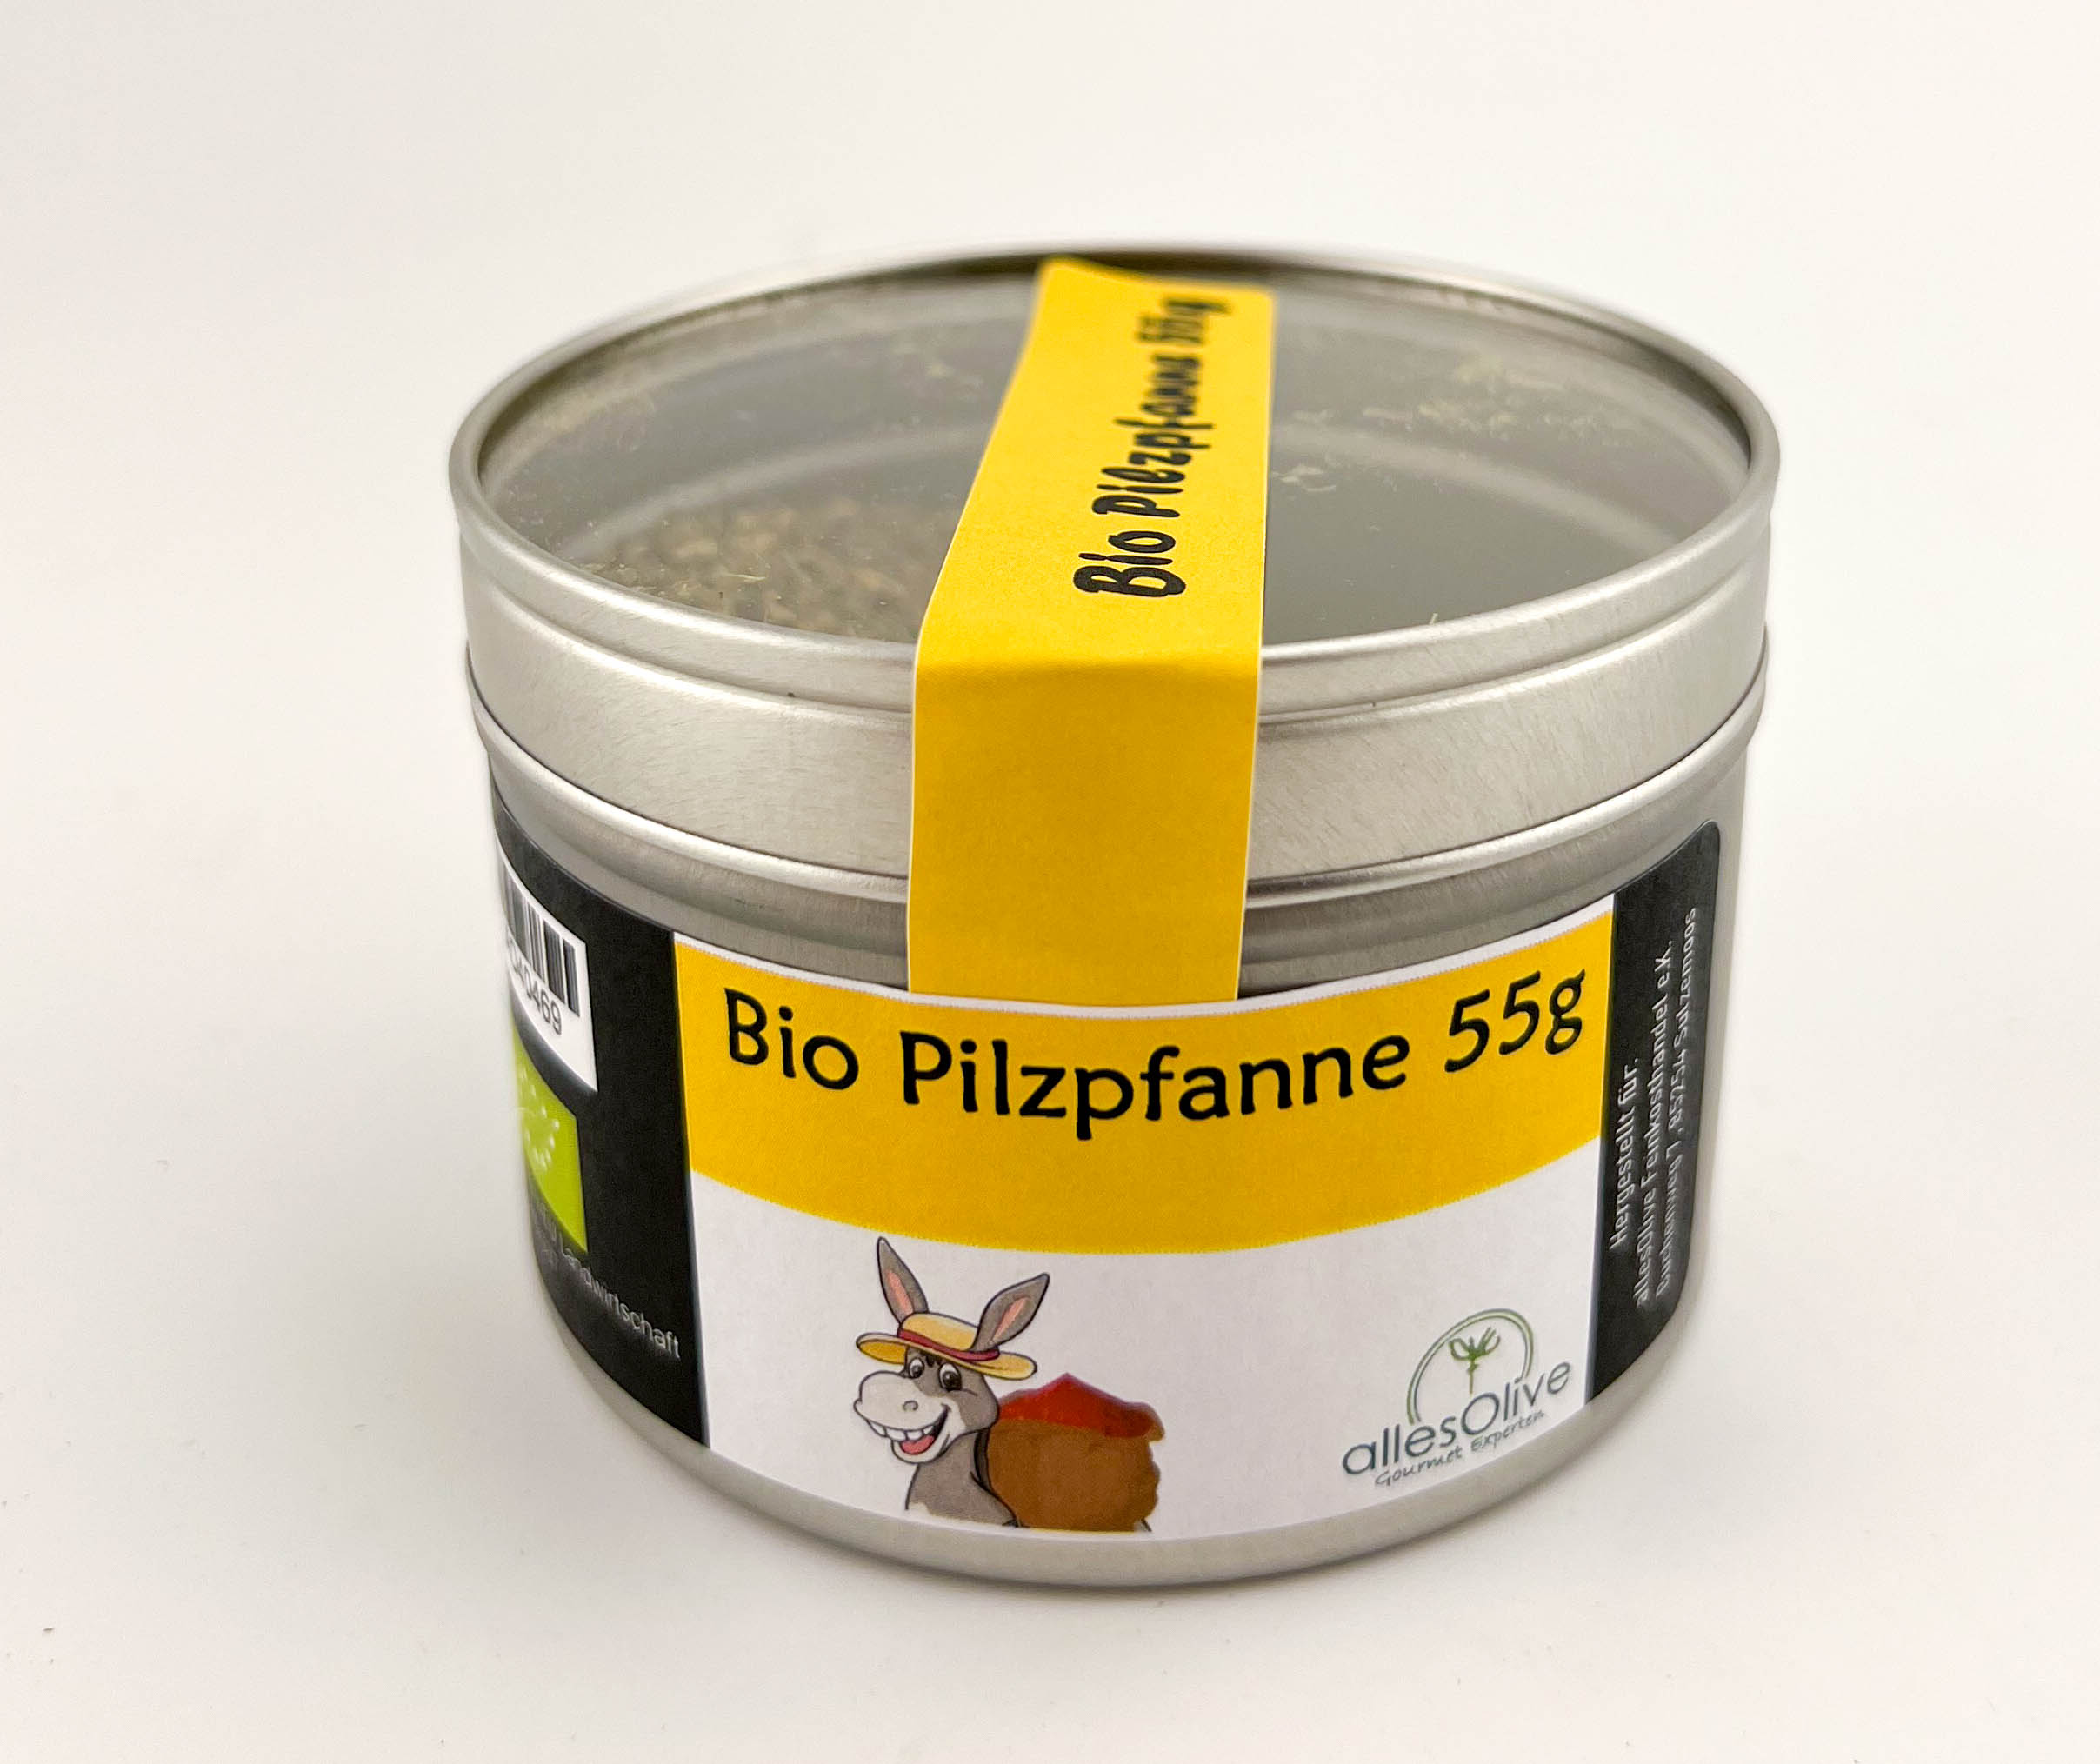 Bio Pilzpfanne 55g